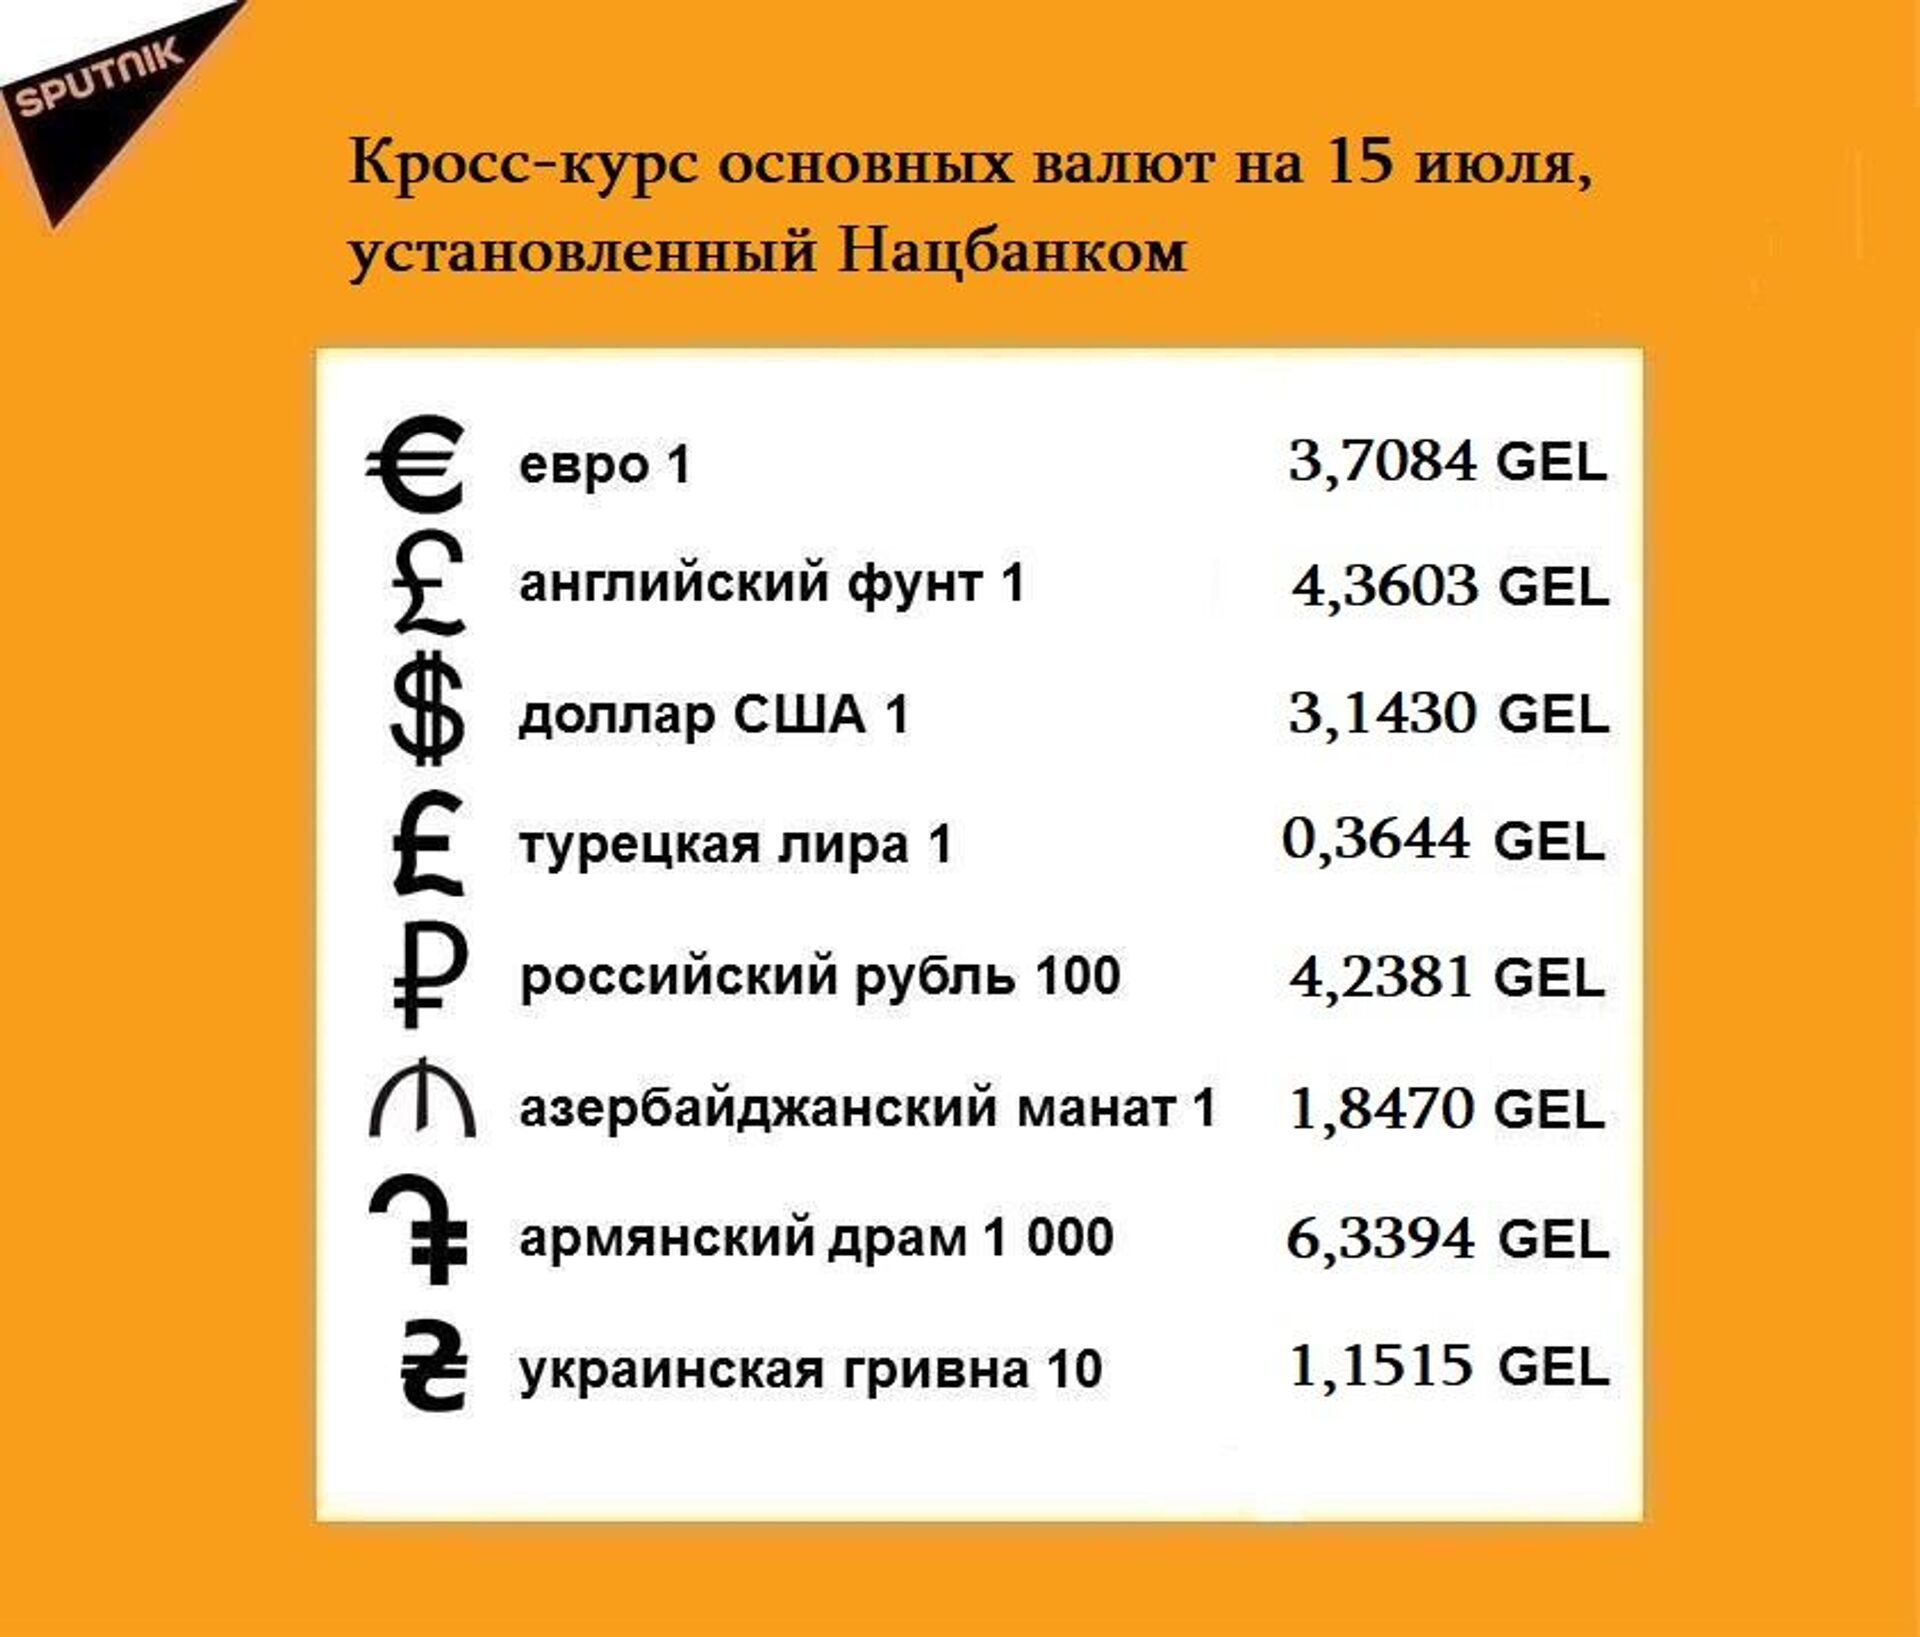 Кросс-курс основных валют на 15 июля - Sputnik Грузия, 1920, 24.08.2021